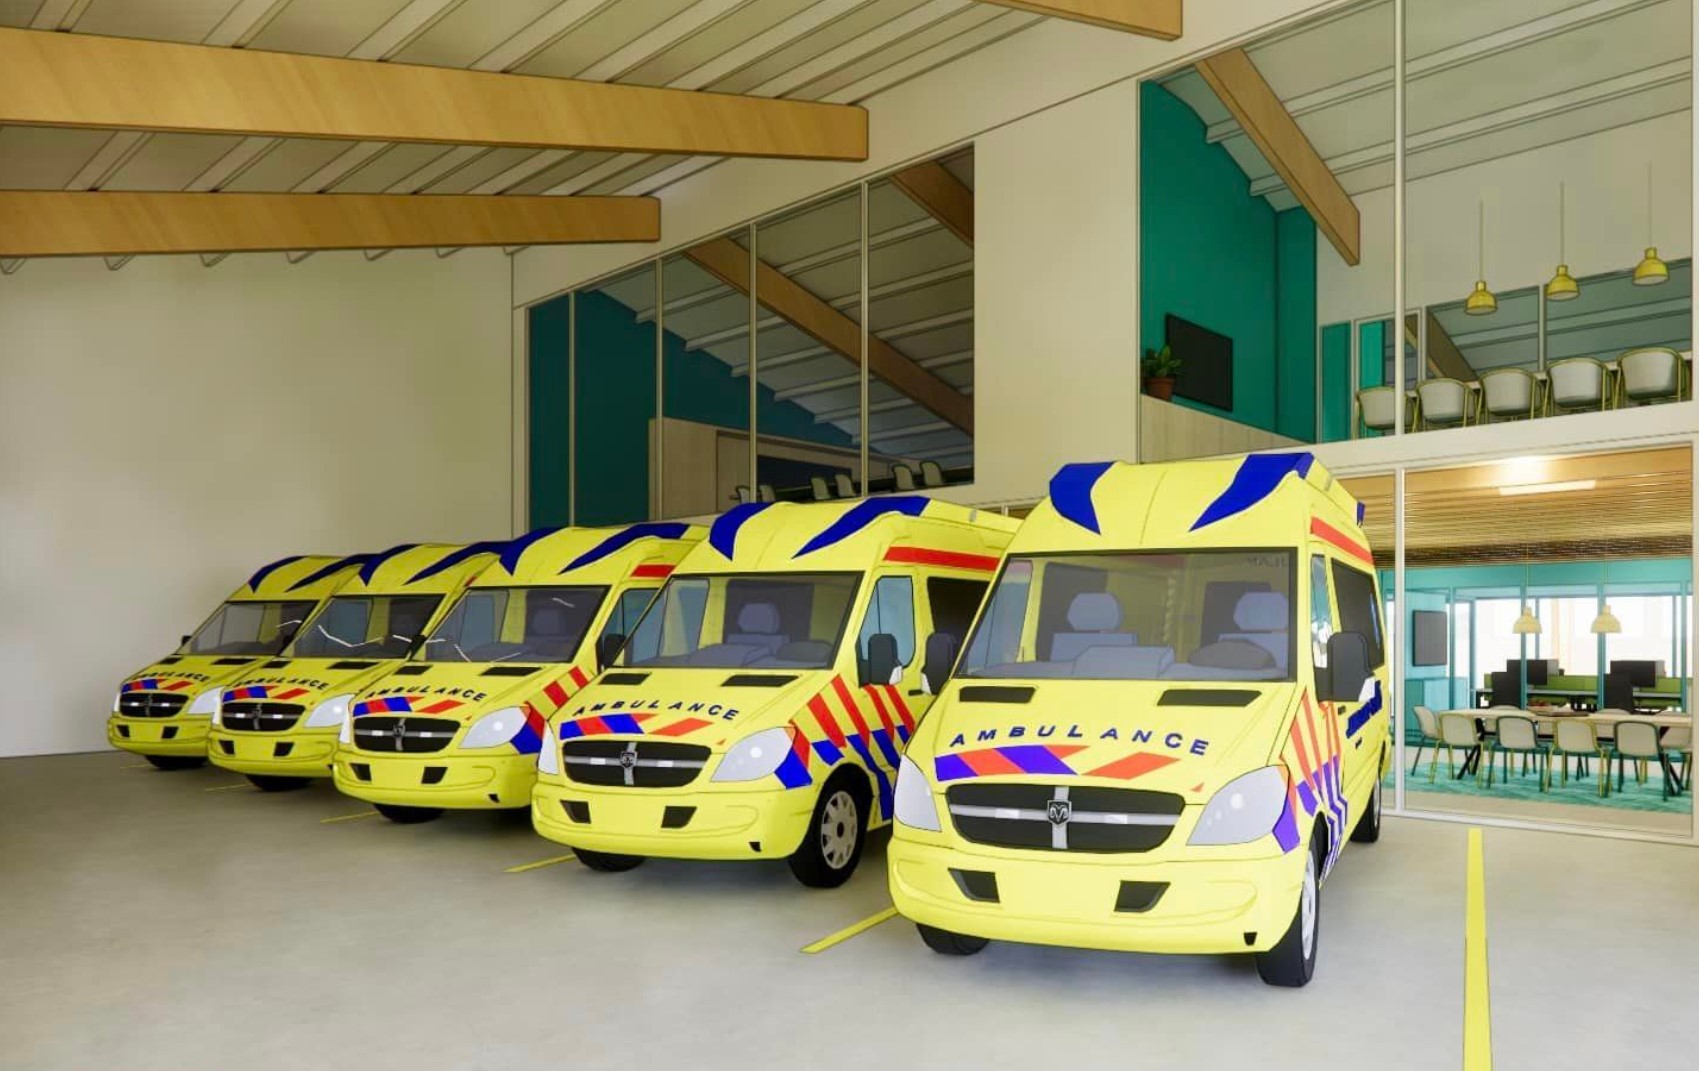 Steun voor stichting Ambulance Wens